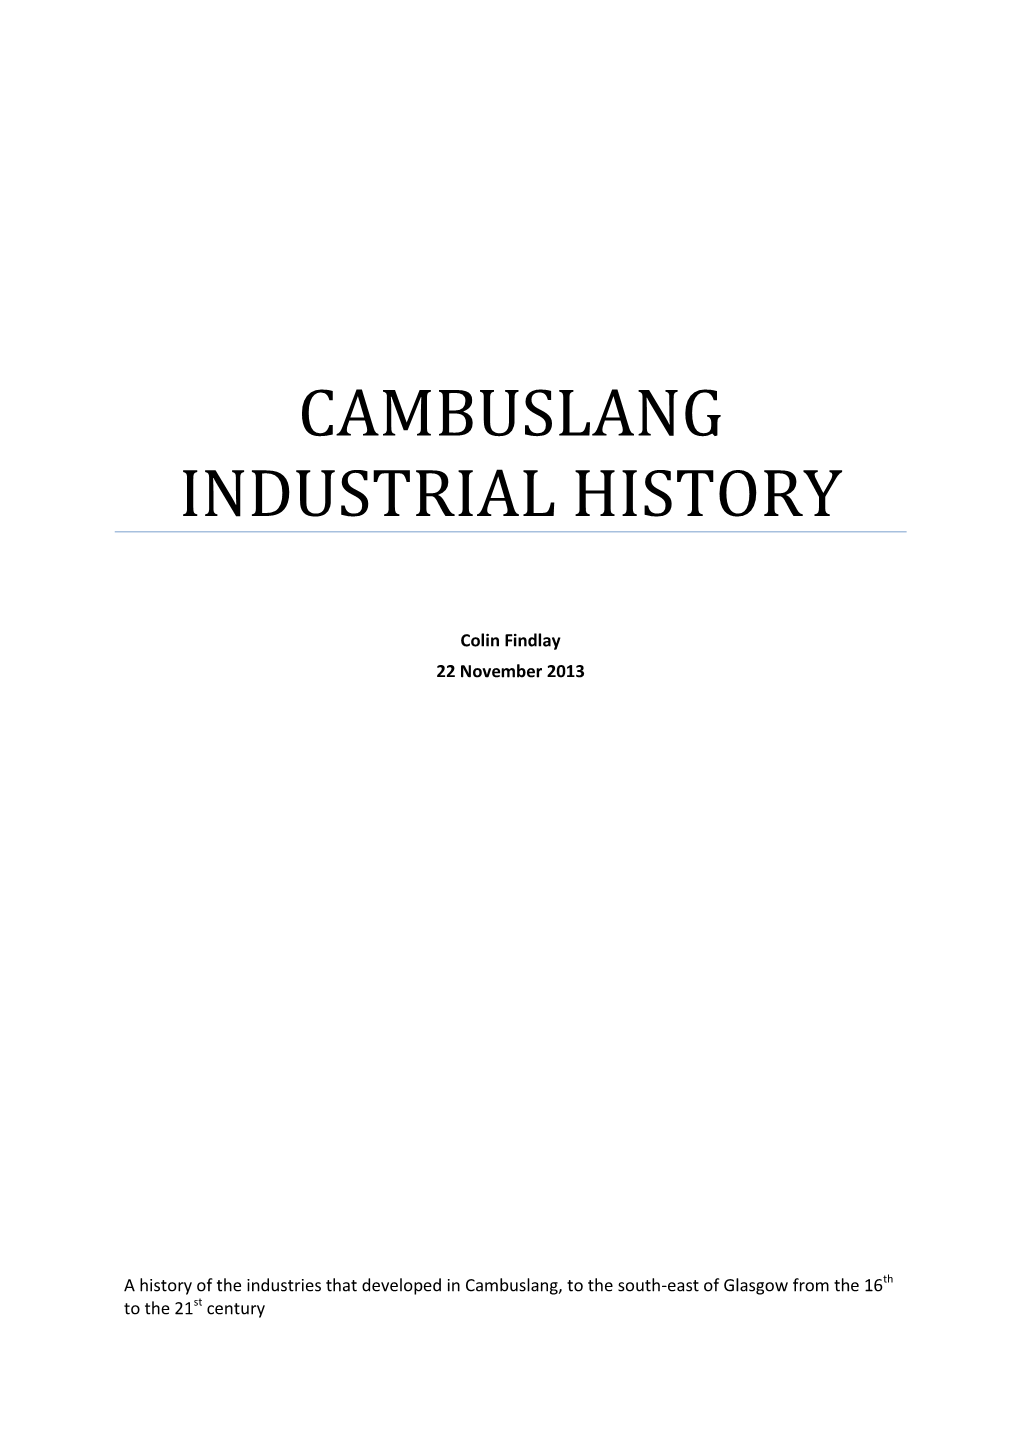 Cambuslang Industrial History